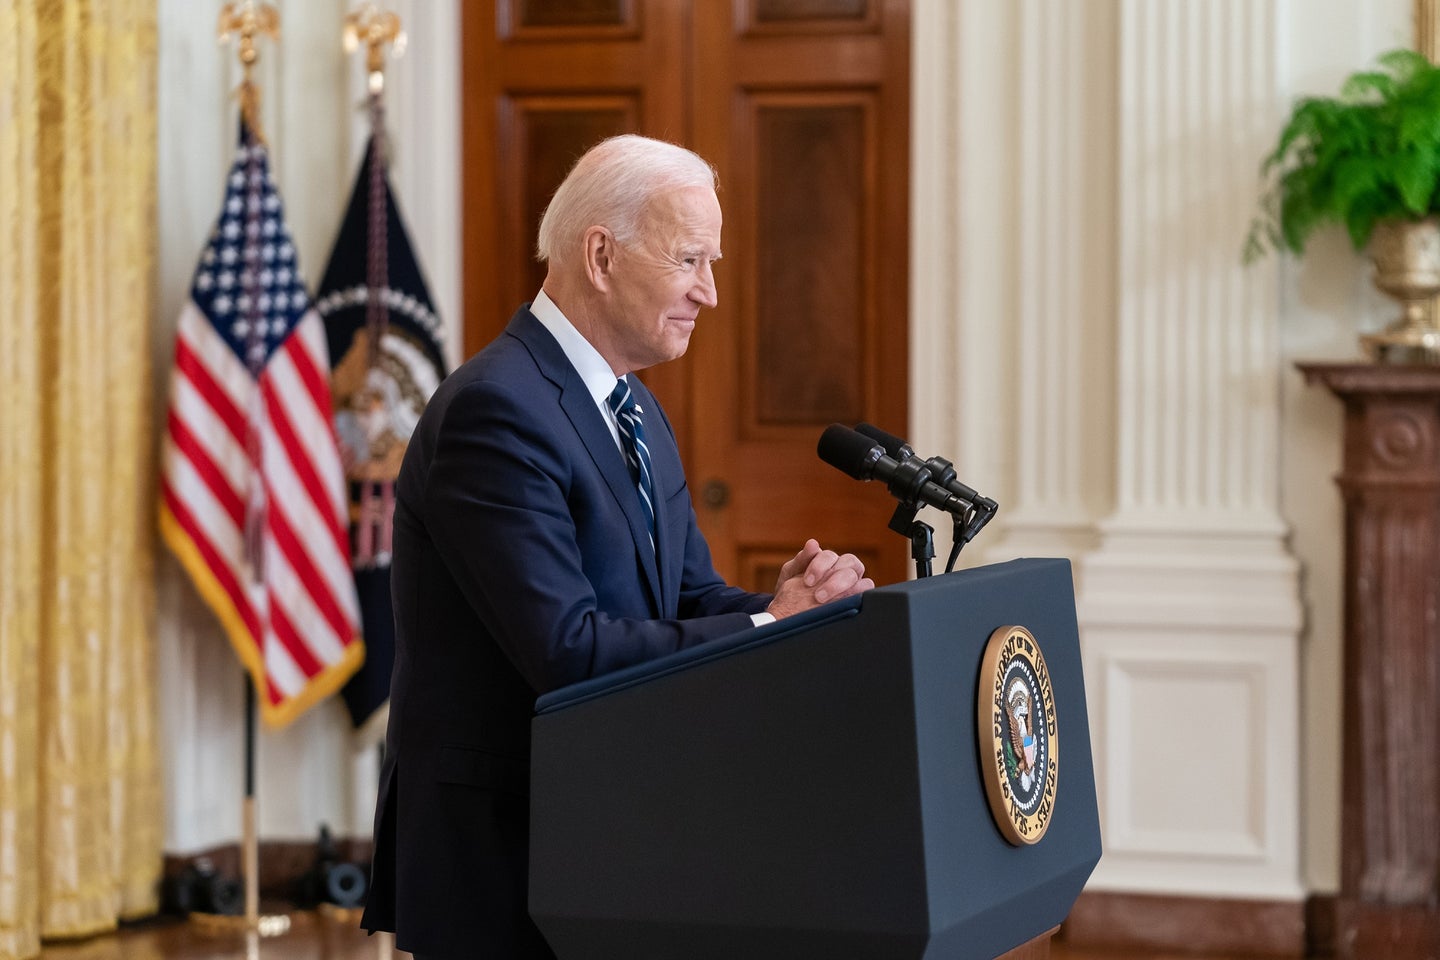 President Joe Biden at a White House podium